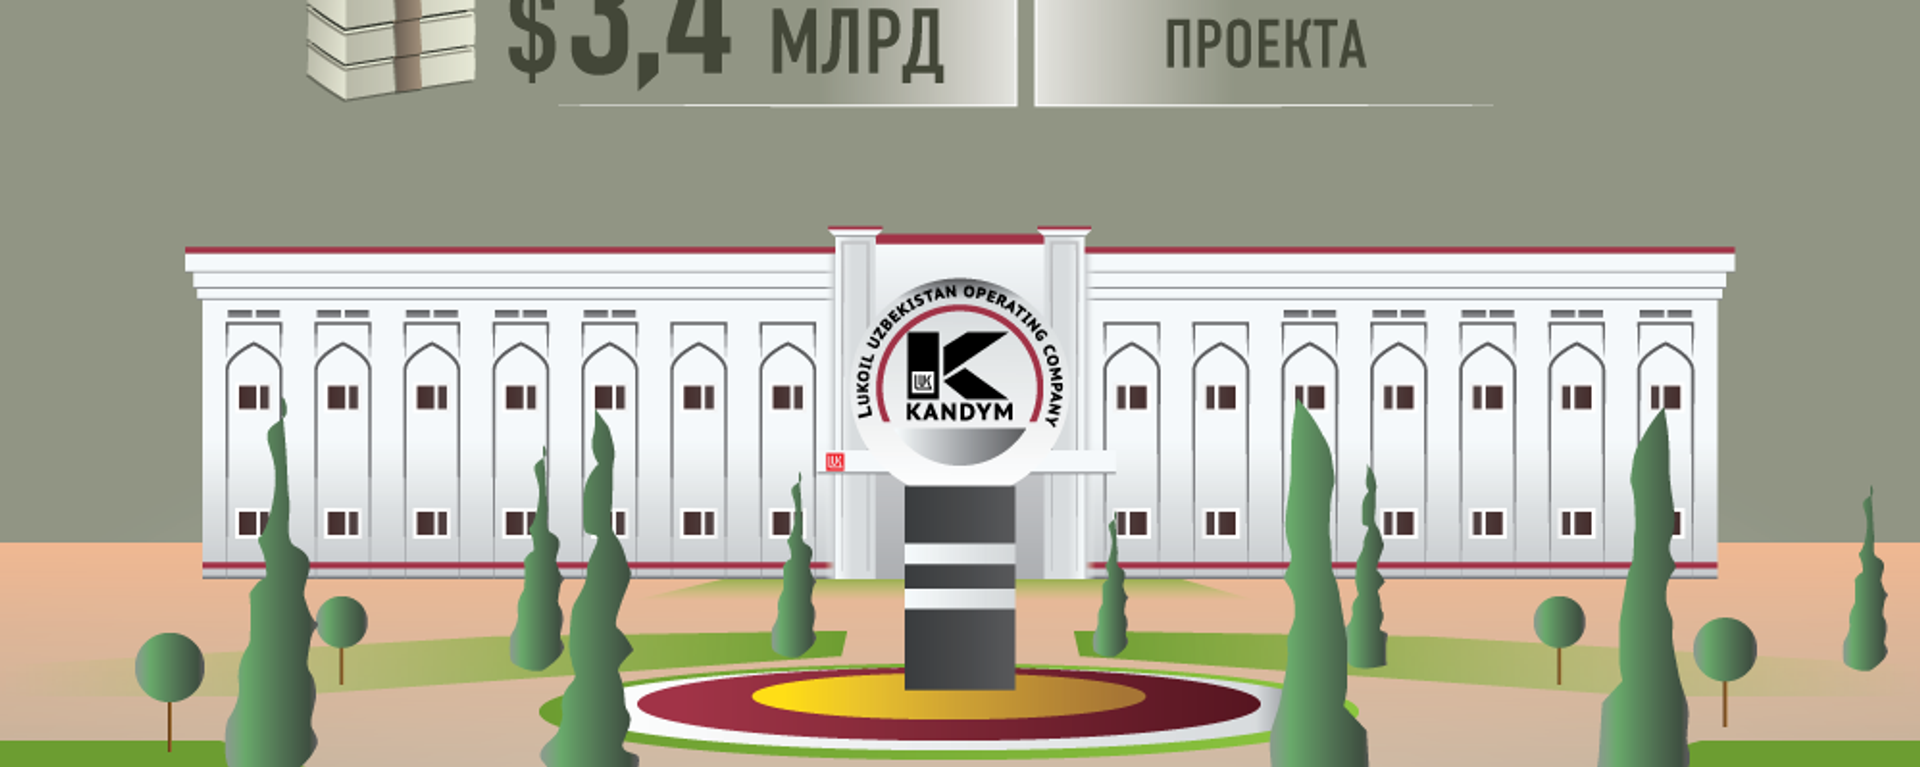 Кандымский ГПК произведет 8 миллиардов кубических метров газа - Sputnik Узбекистан, 1920, 29.04.2018